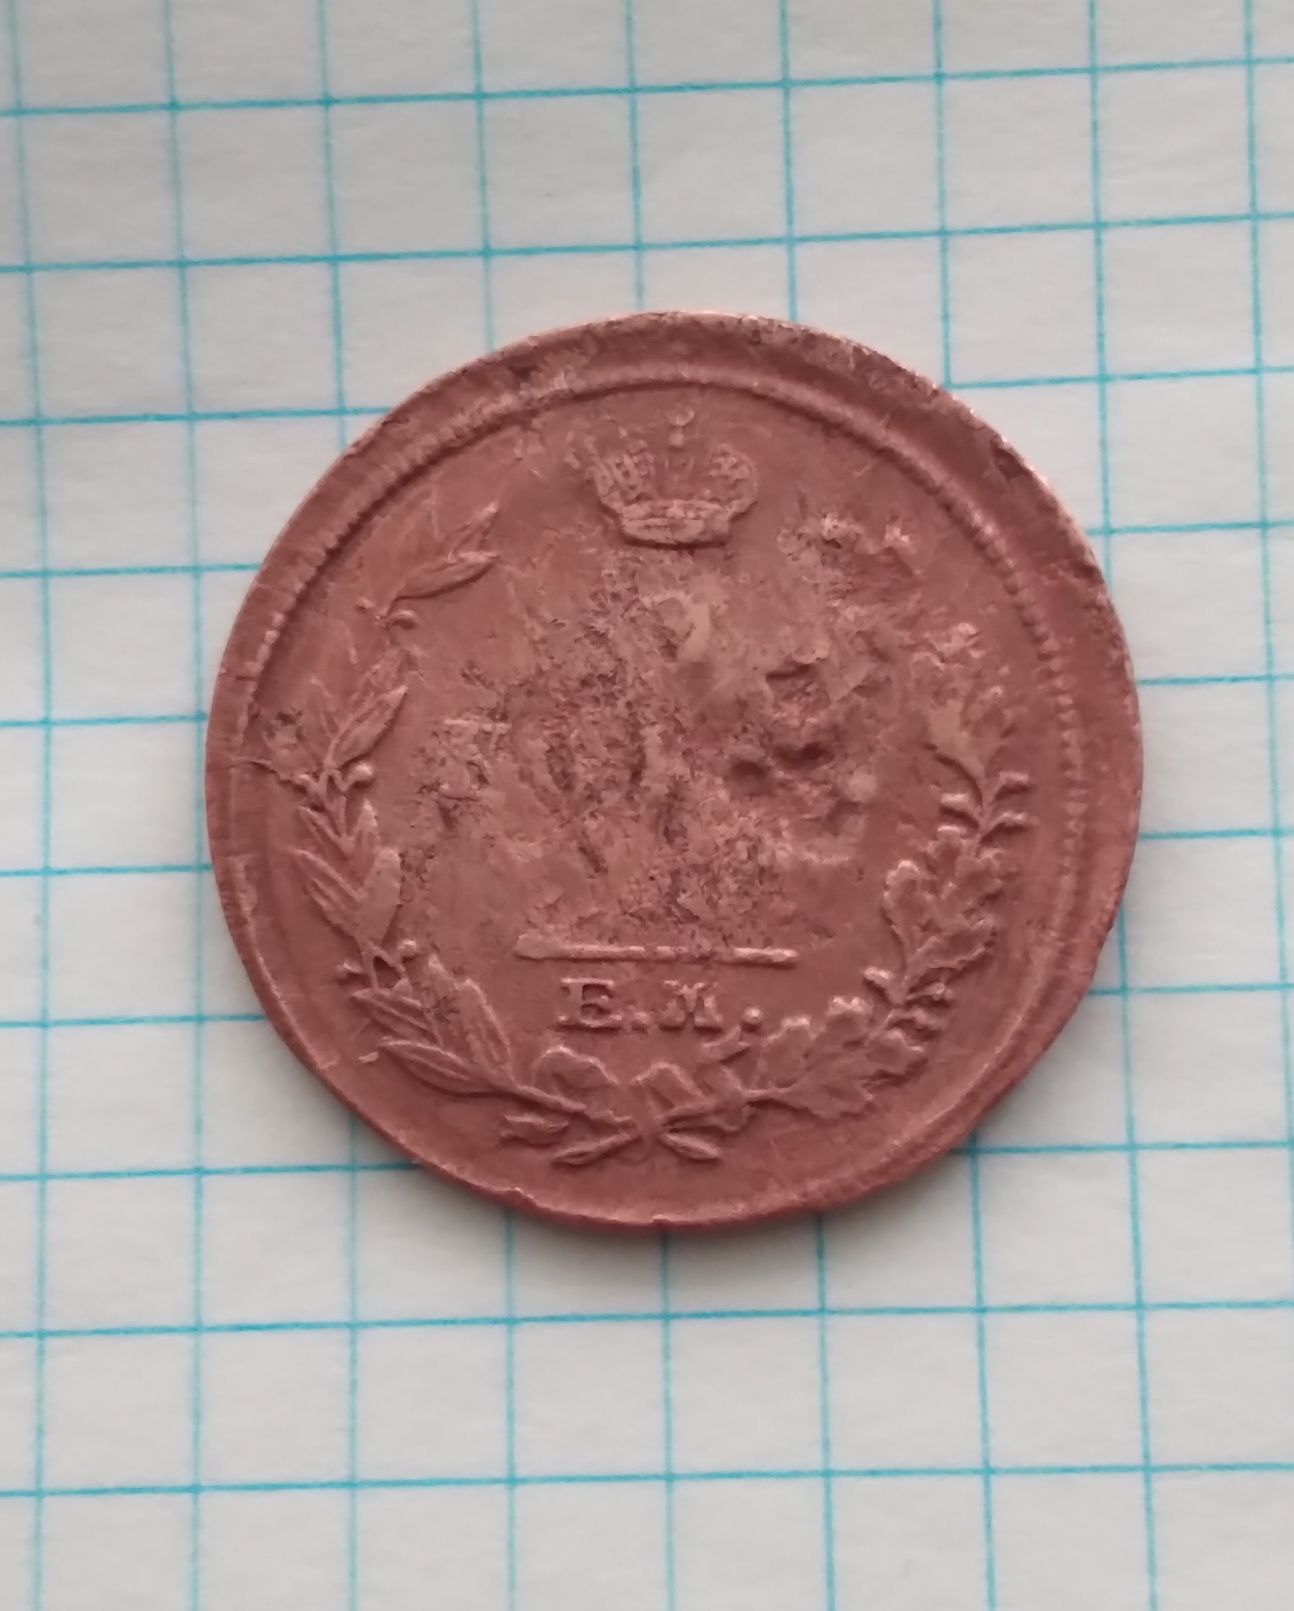 Продам медные монеты номиналом 2 копейки 1817 и 1818 годов. 
Цена 100